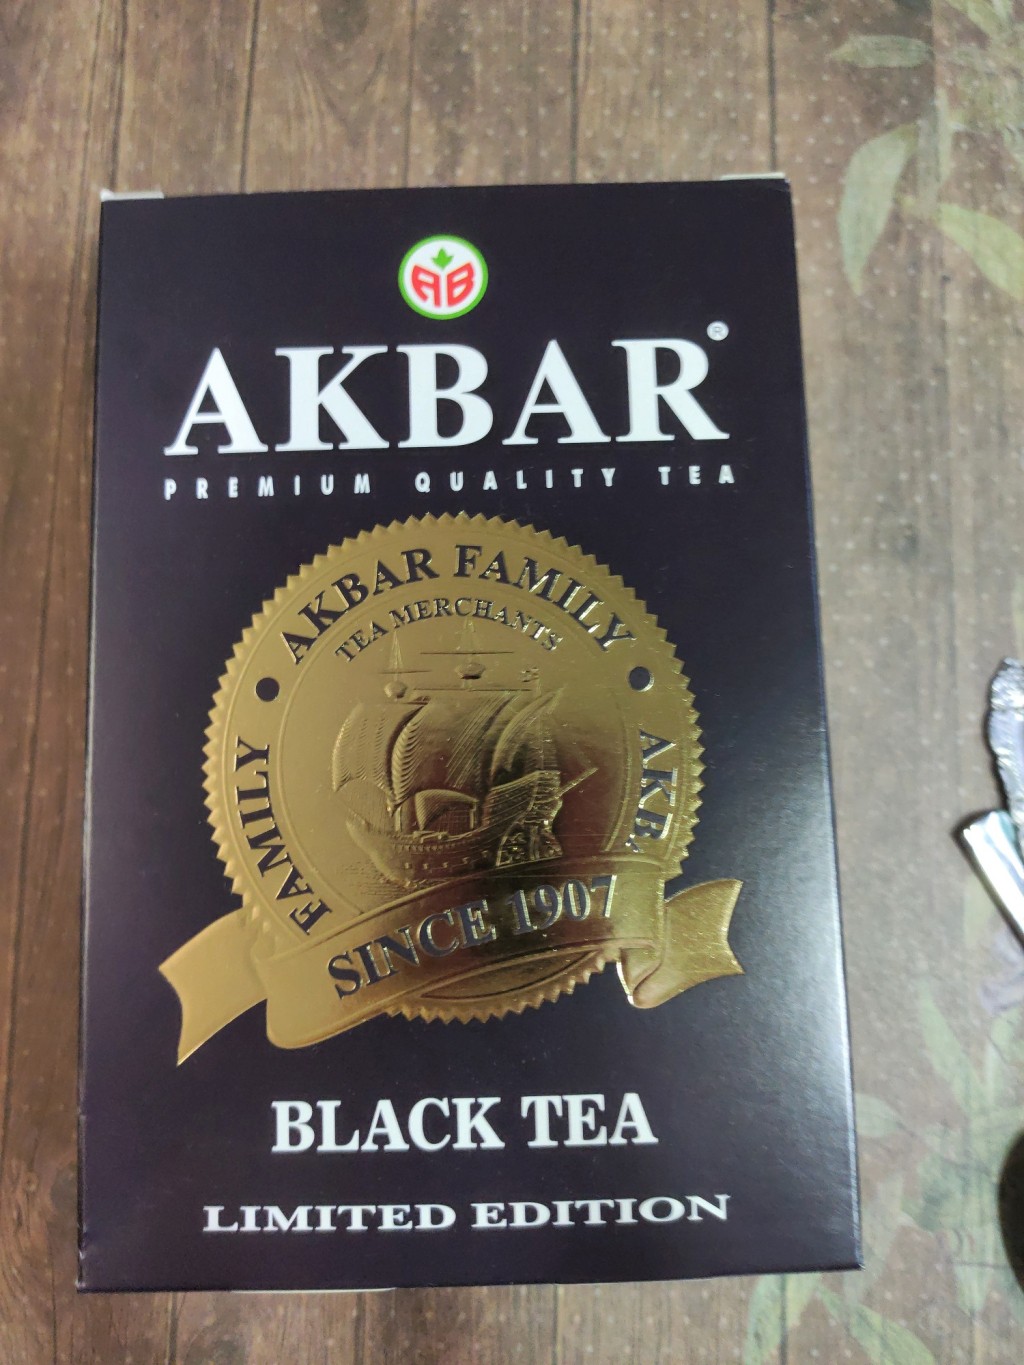 Чай Акбар 100 лет (фиолетовая пачка) - Akbar Limited Edition, отличный чай